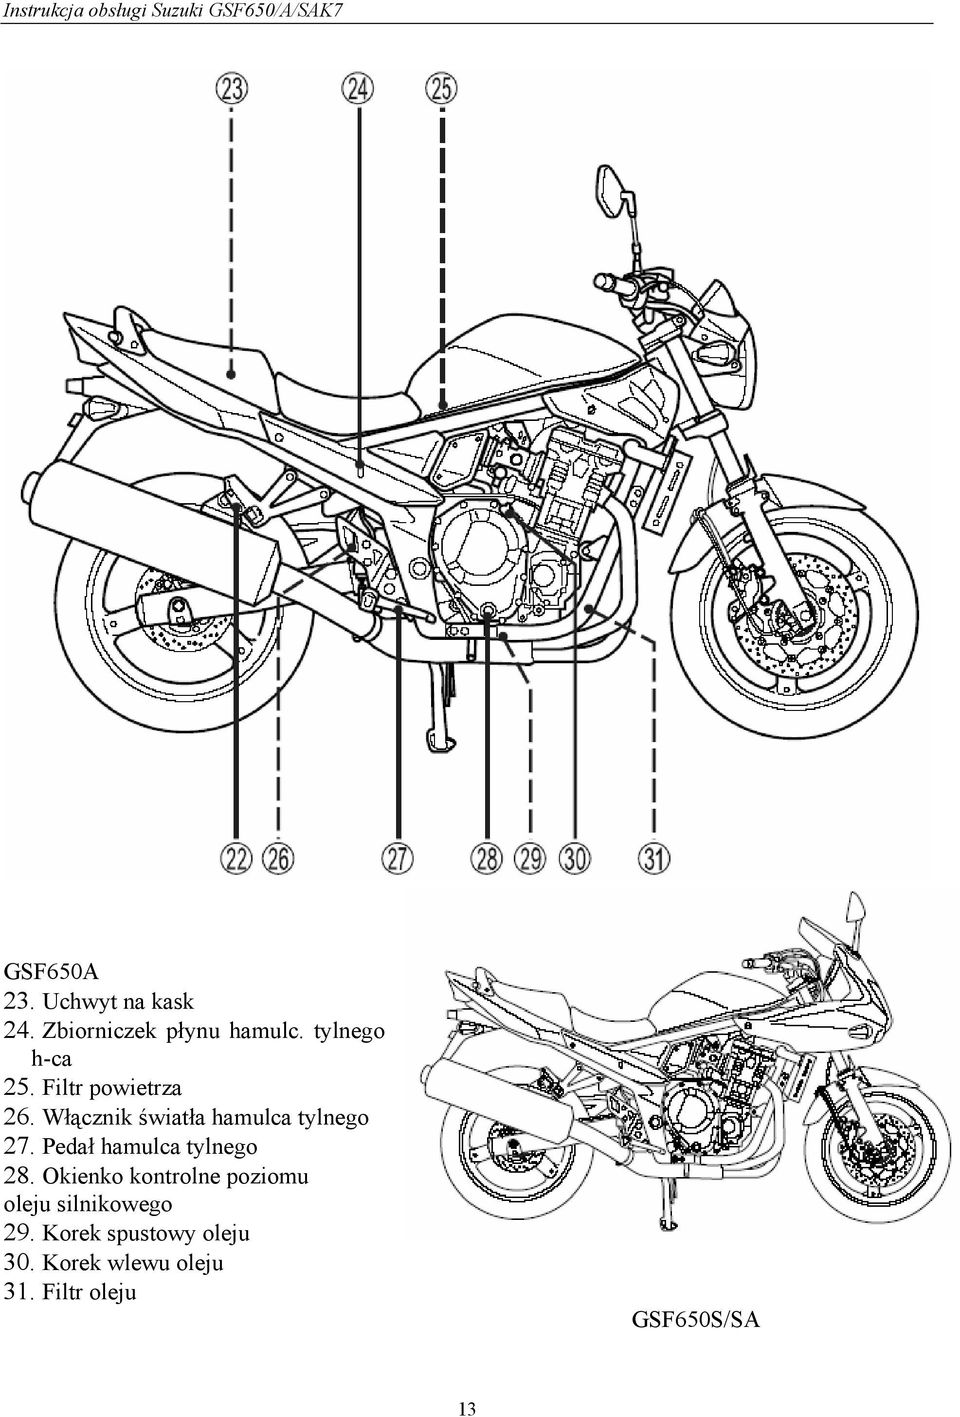 Instrukcja Obsługi Motocykla Suzuki Gsf650A/Sa - Pdf Darmowe Pobieranie